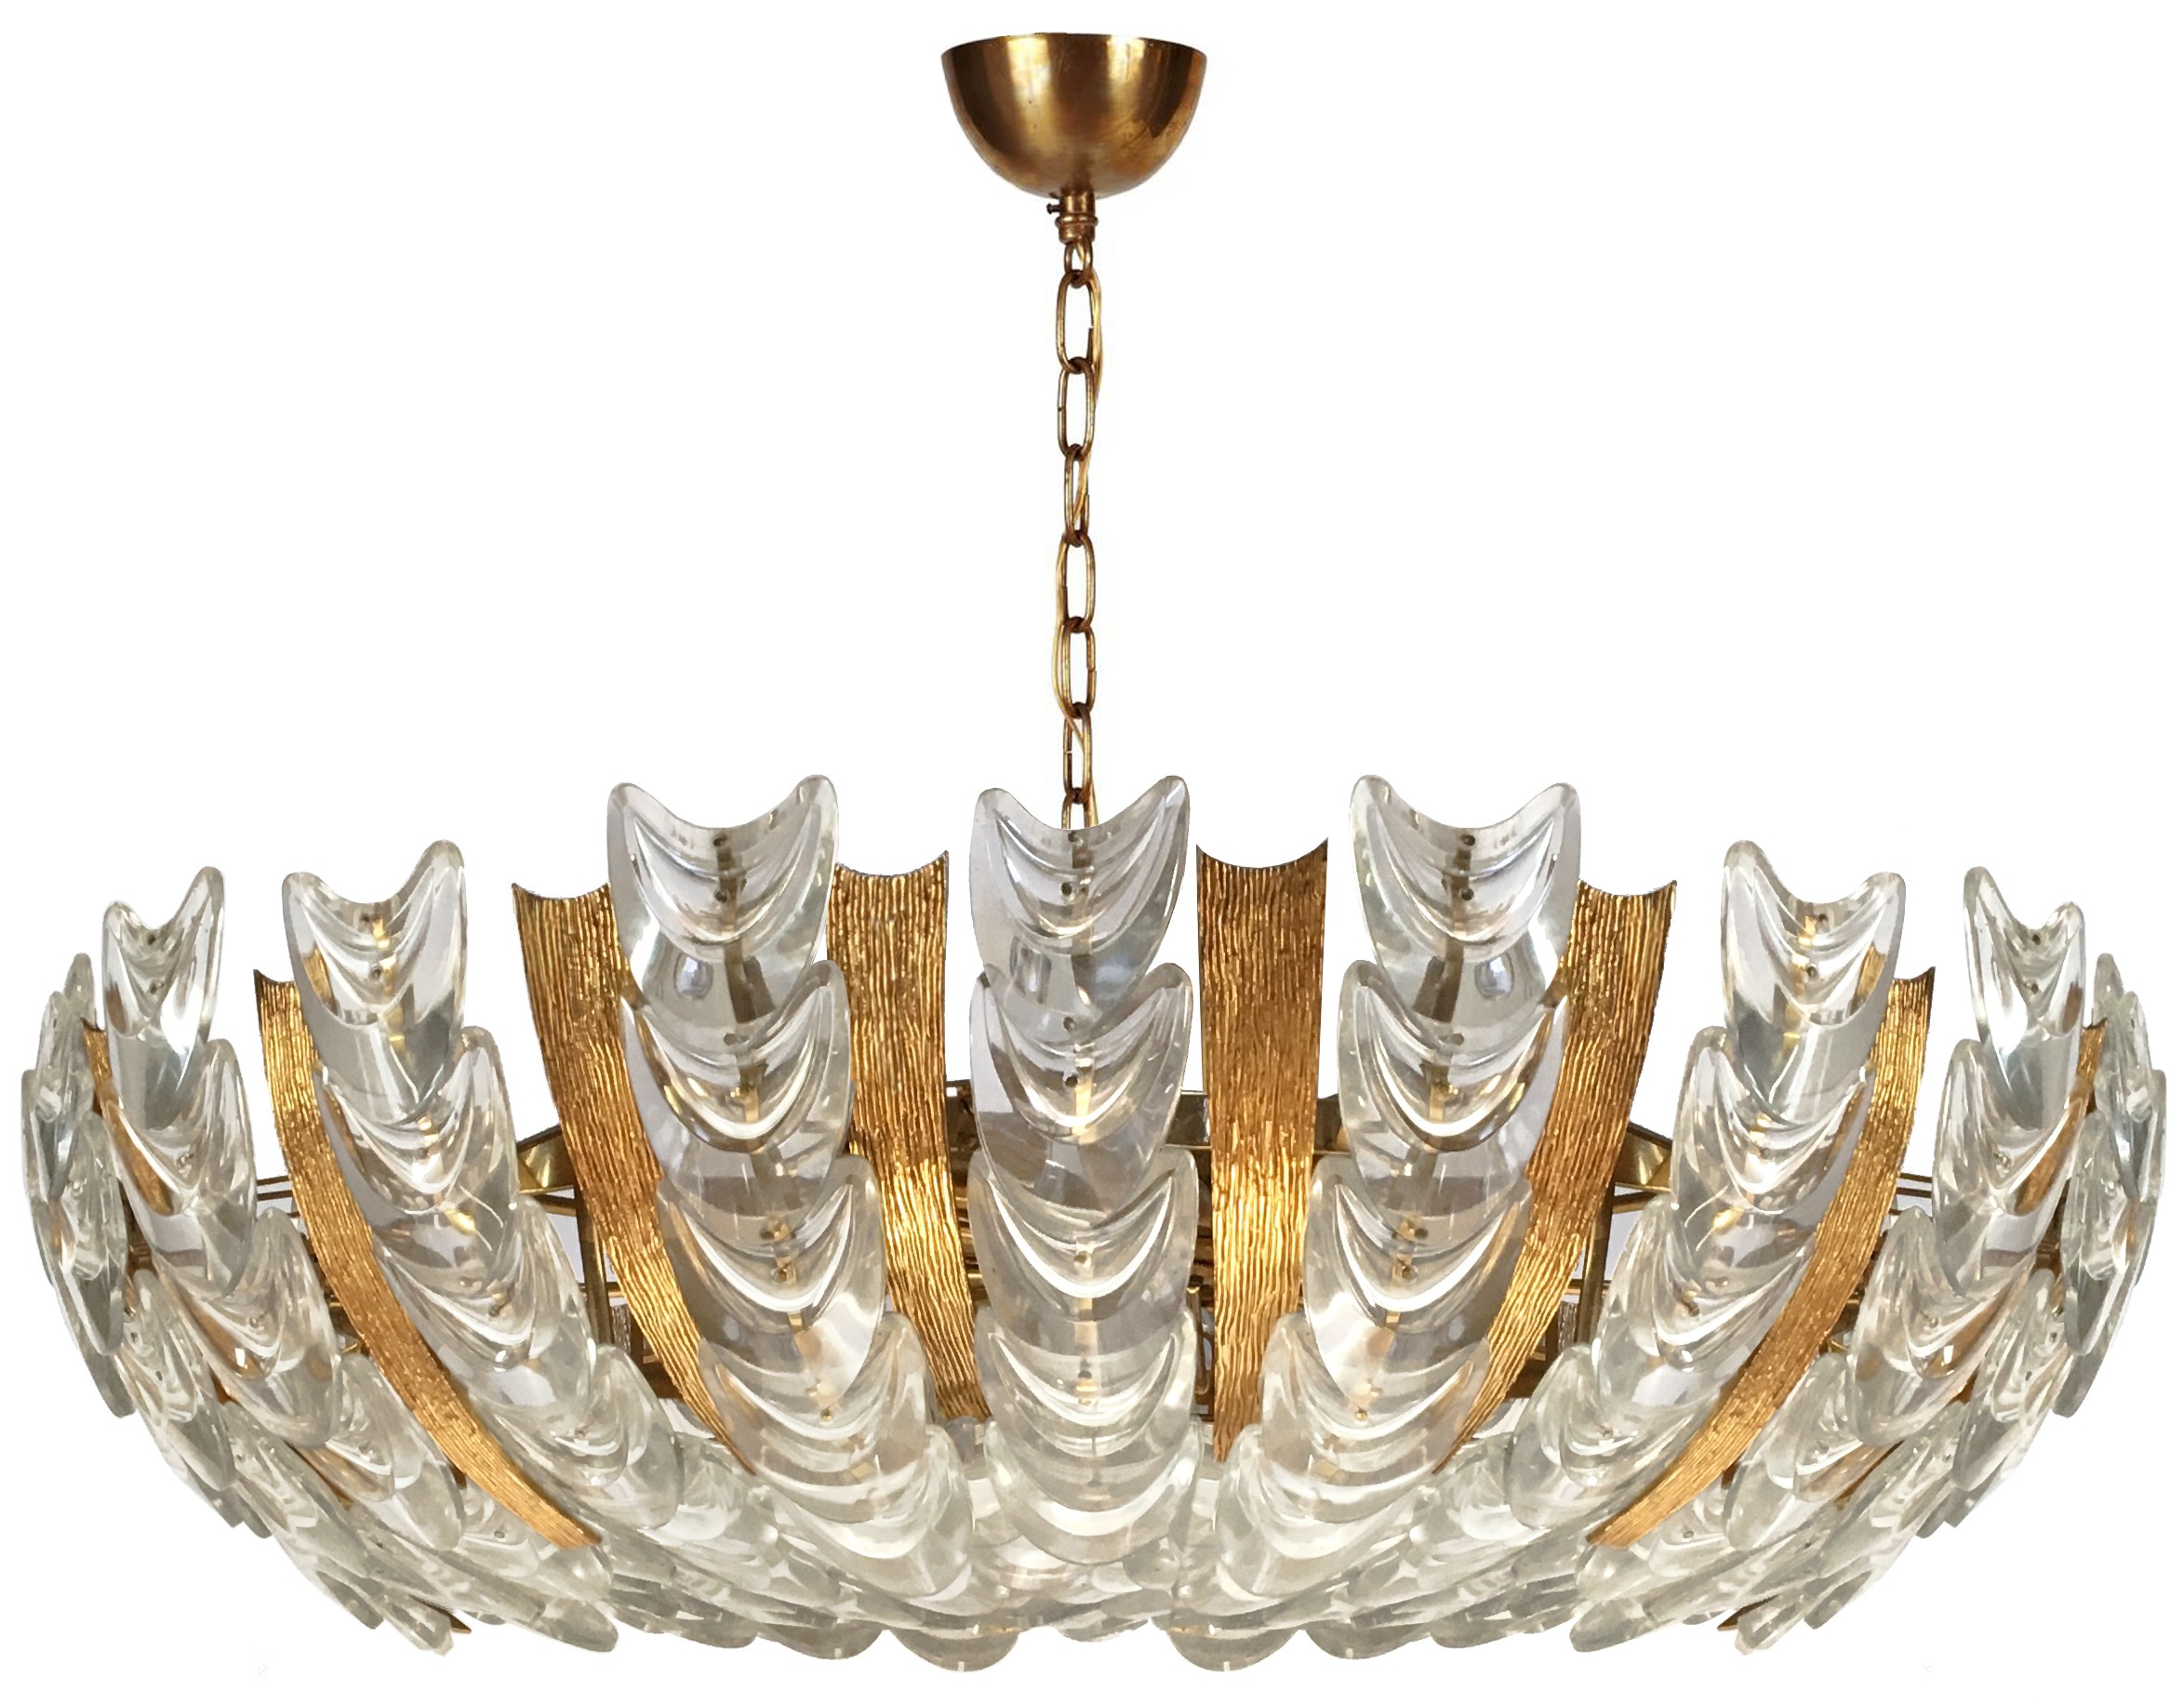 Austrian Gilt Textured Brass and Glass Chandelier